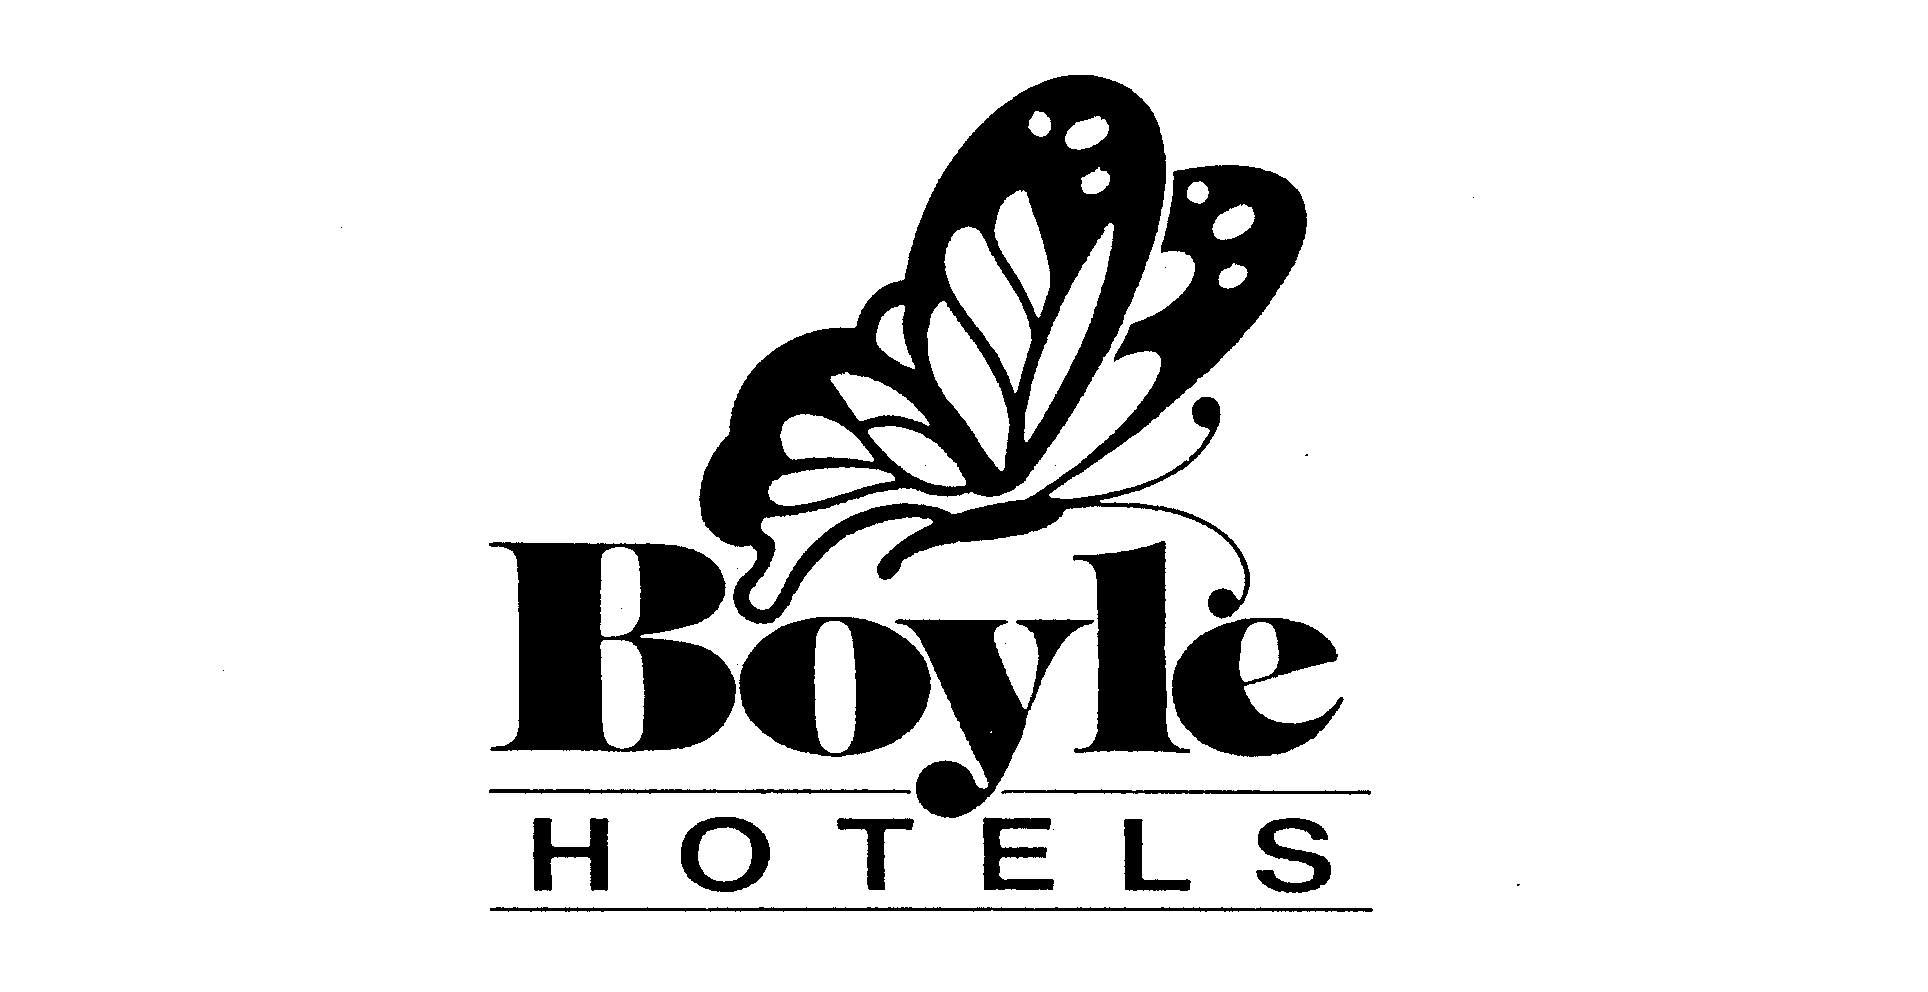  BOYLE HOTELS